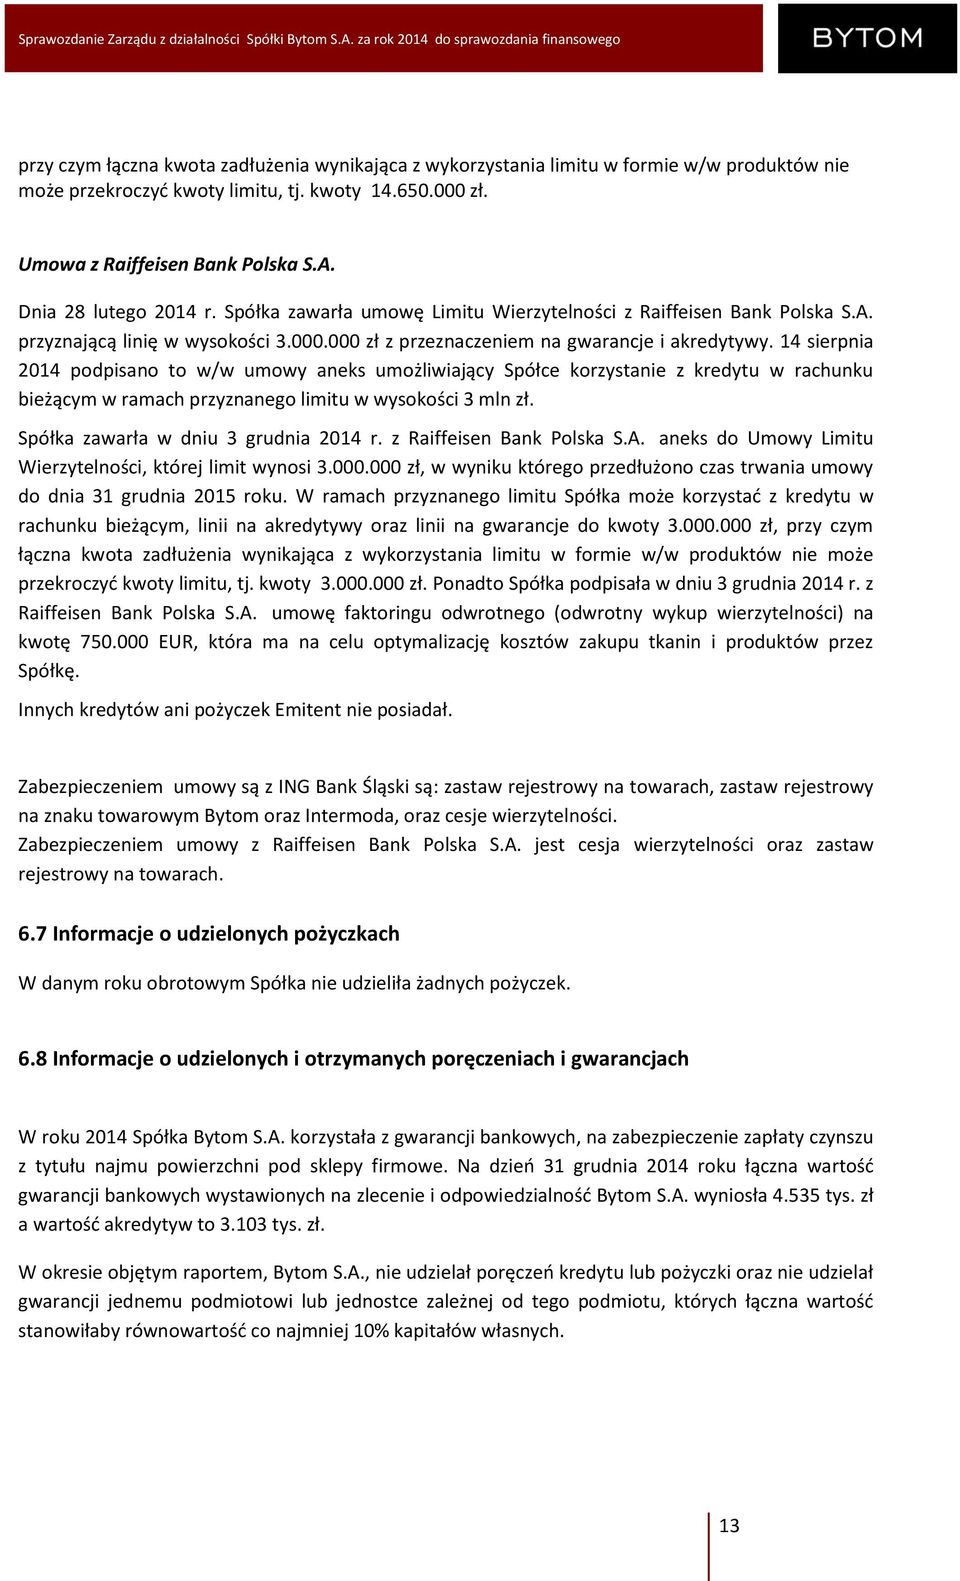 14 sierpnia 2014 podpisano to w/w umowy aneks umożliwiający Spółce korzystanie z kredytu w rachunku bieżącym w ramach przyznanego limitu w wysokości 3 mln zł. Spółka zawarła w dniu 3 grudnia 2014 r.